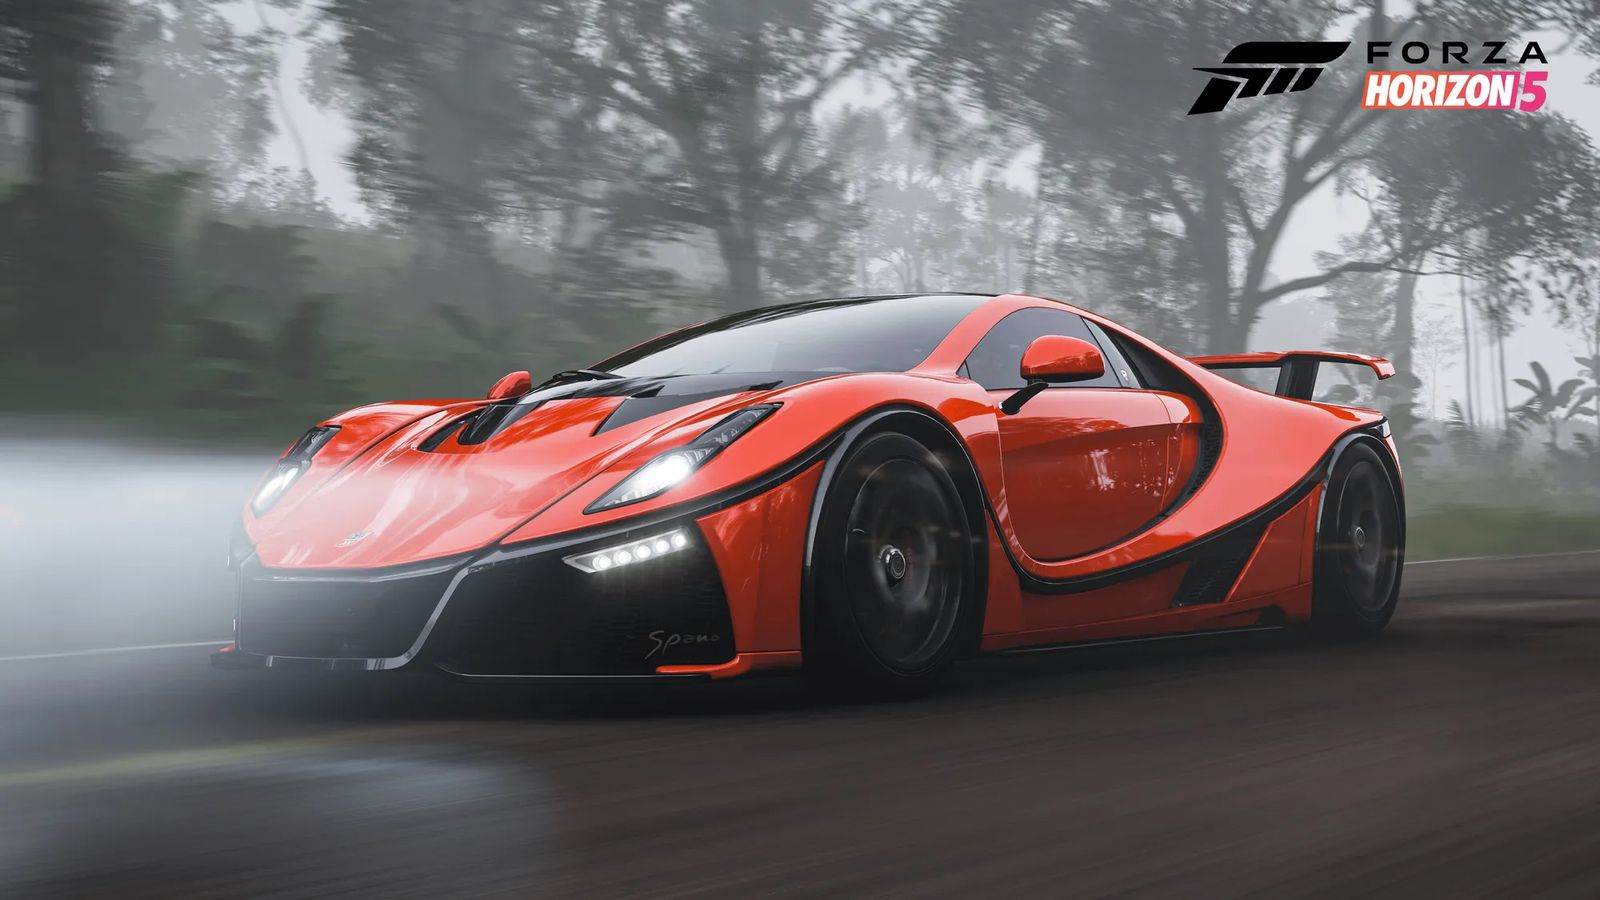 Forza Horizon 5 Community Choice GTA Spano